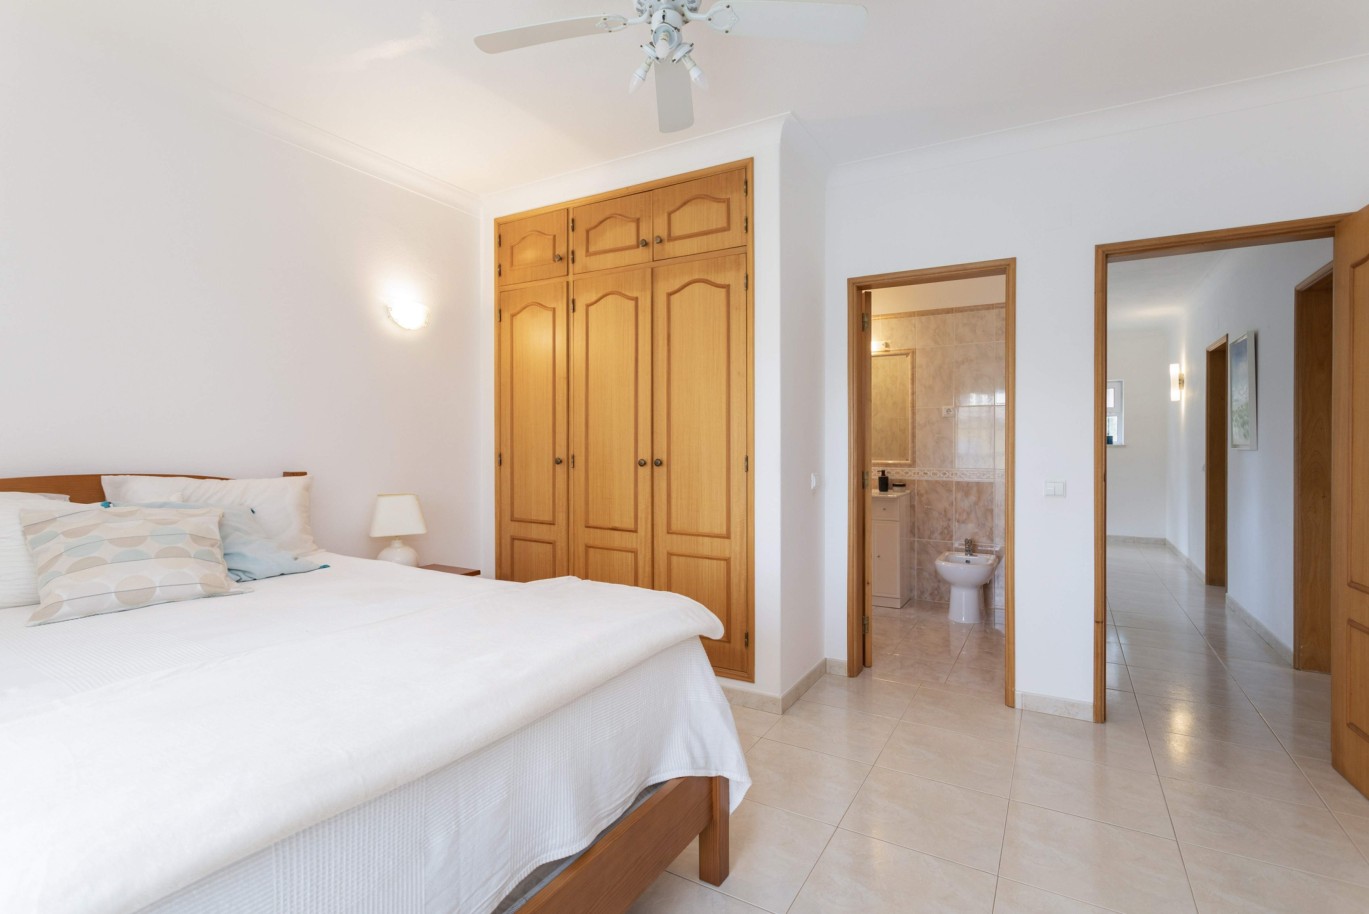 4 Bedroom Villa with pool for sale in Penina Golf, Alvor, Algarve_243122